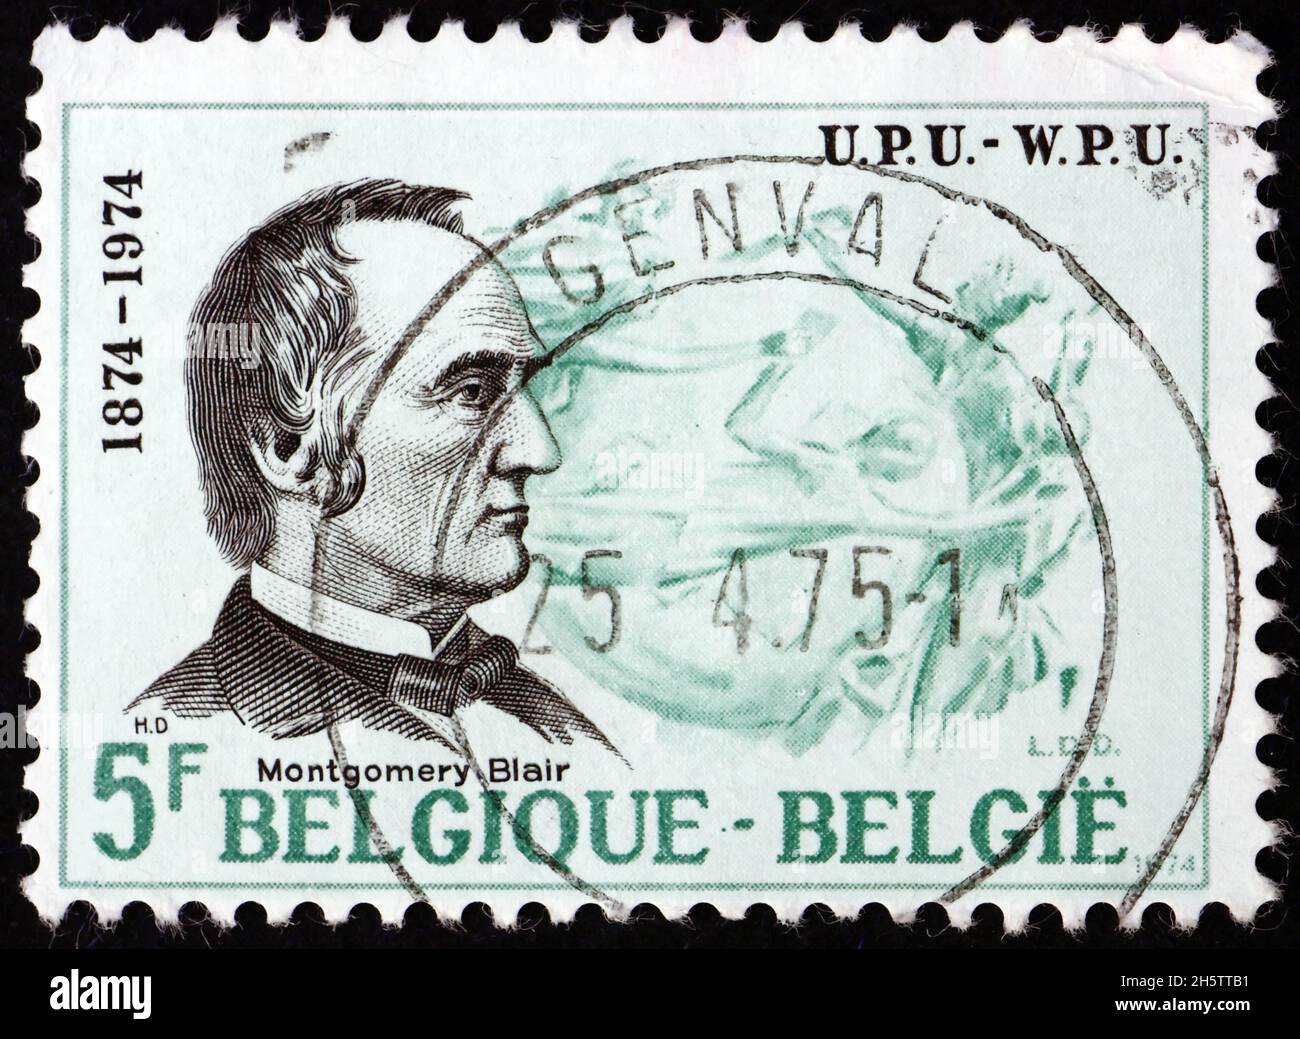 BELGIQUE - VERS 1974 : un timbre imprimé en Belgique montre Montgomery Blair, fondateur de l'UPU, vers 1974 Banque D'Images